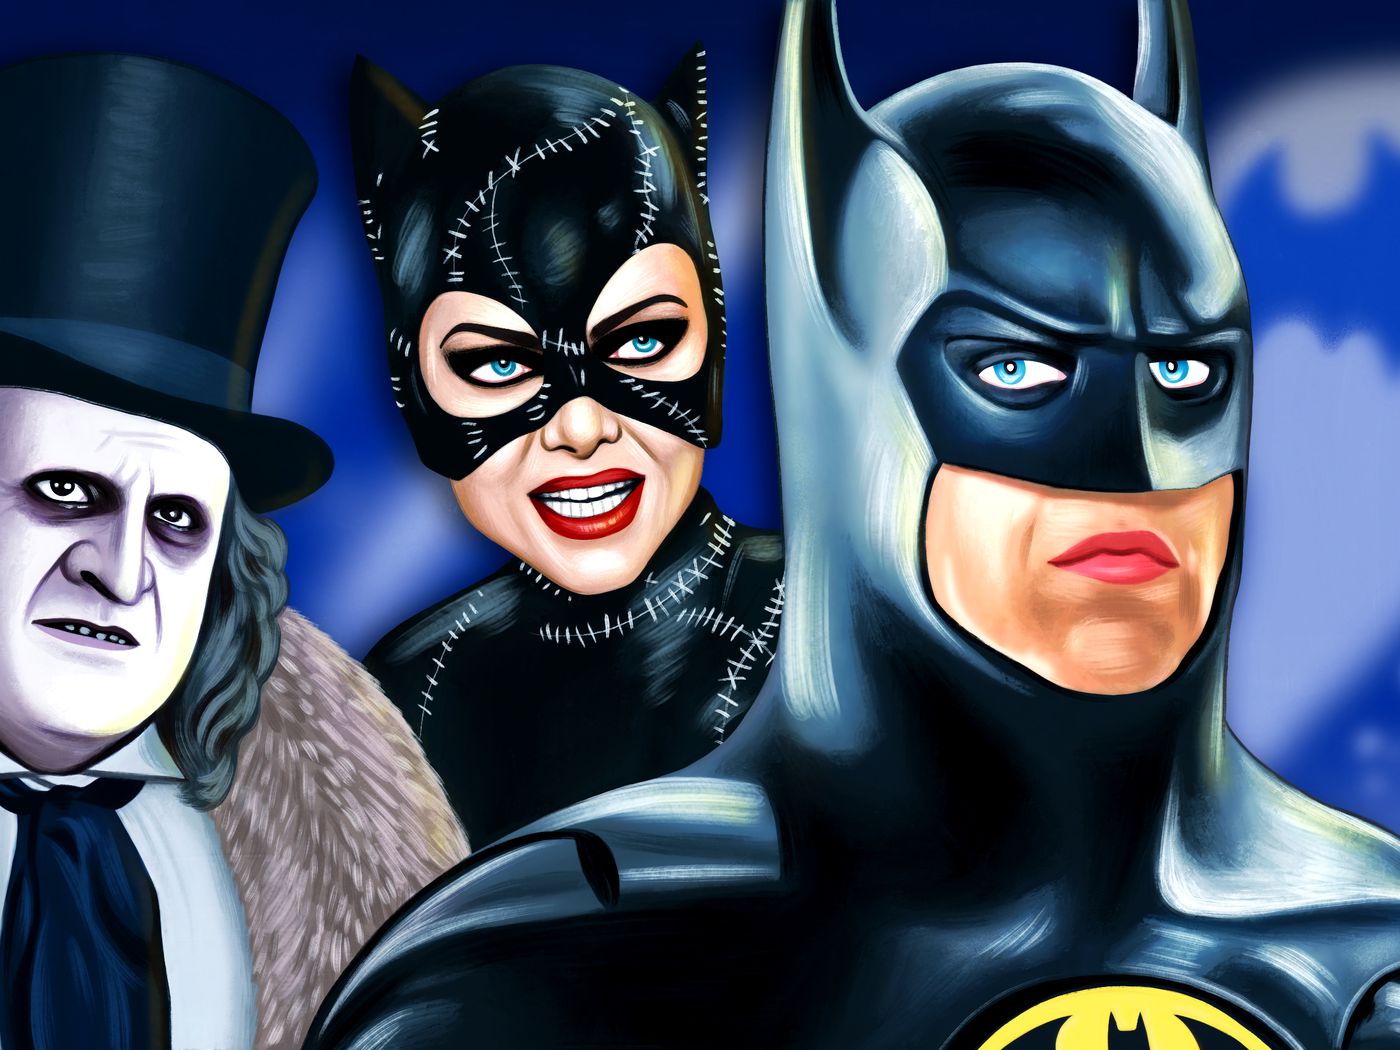 aflevere Kriminel begå Batman Returns' Was the Peak of Grotesque Superhero Cinema - The Ringer